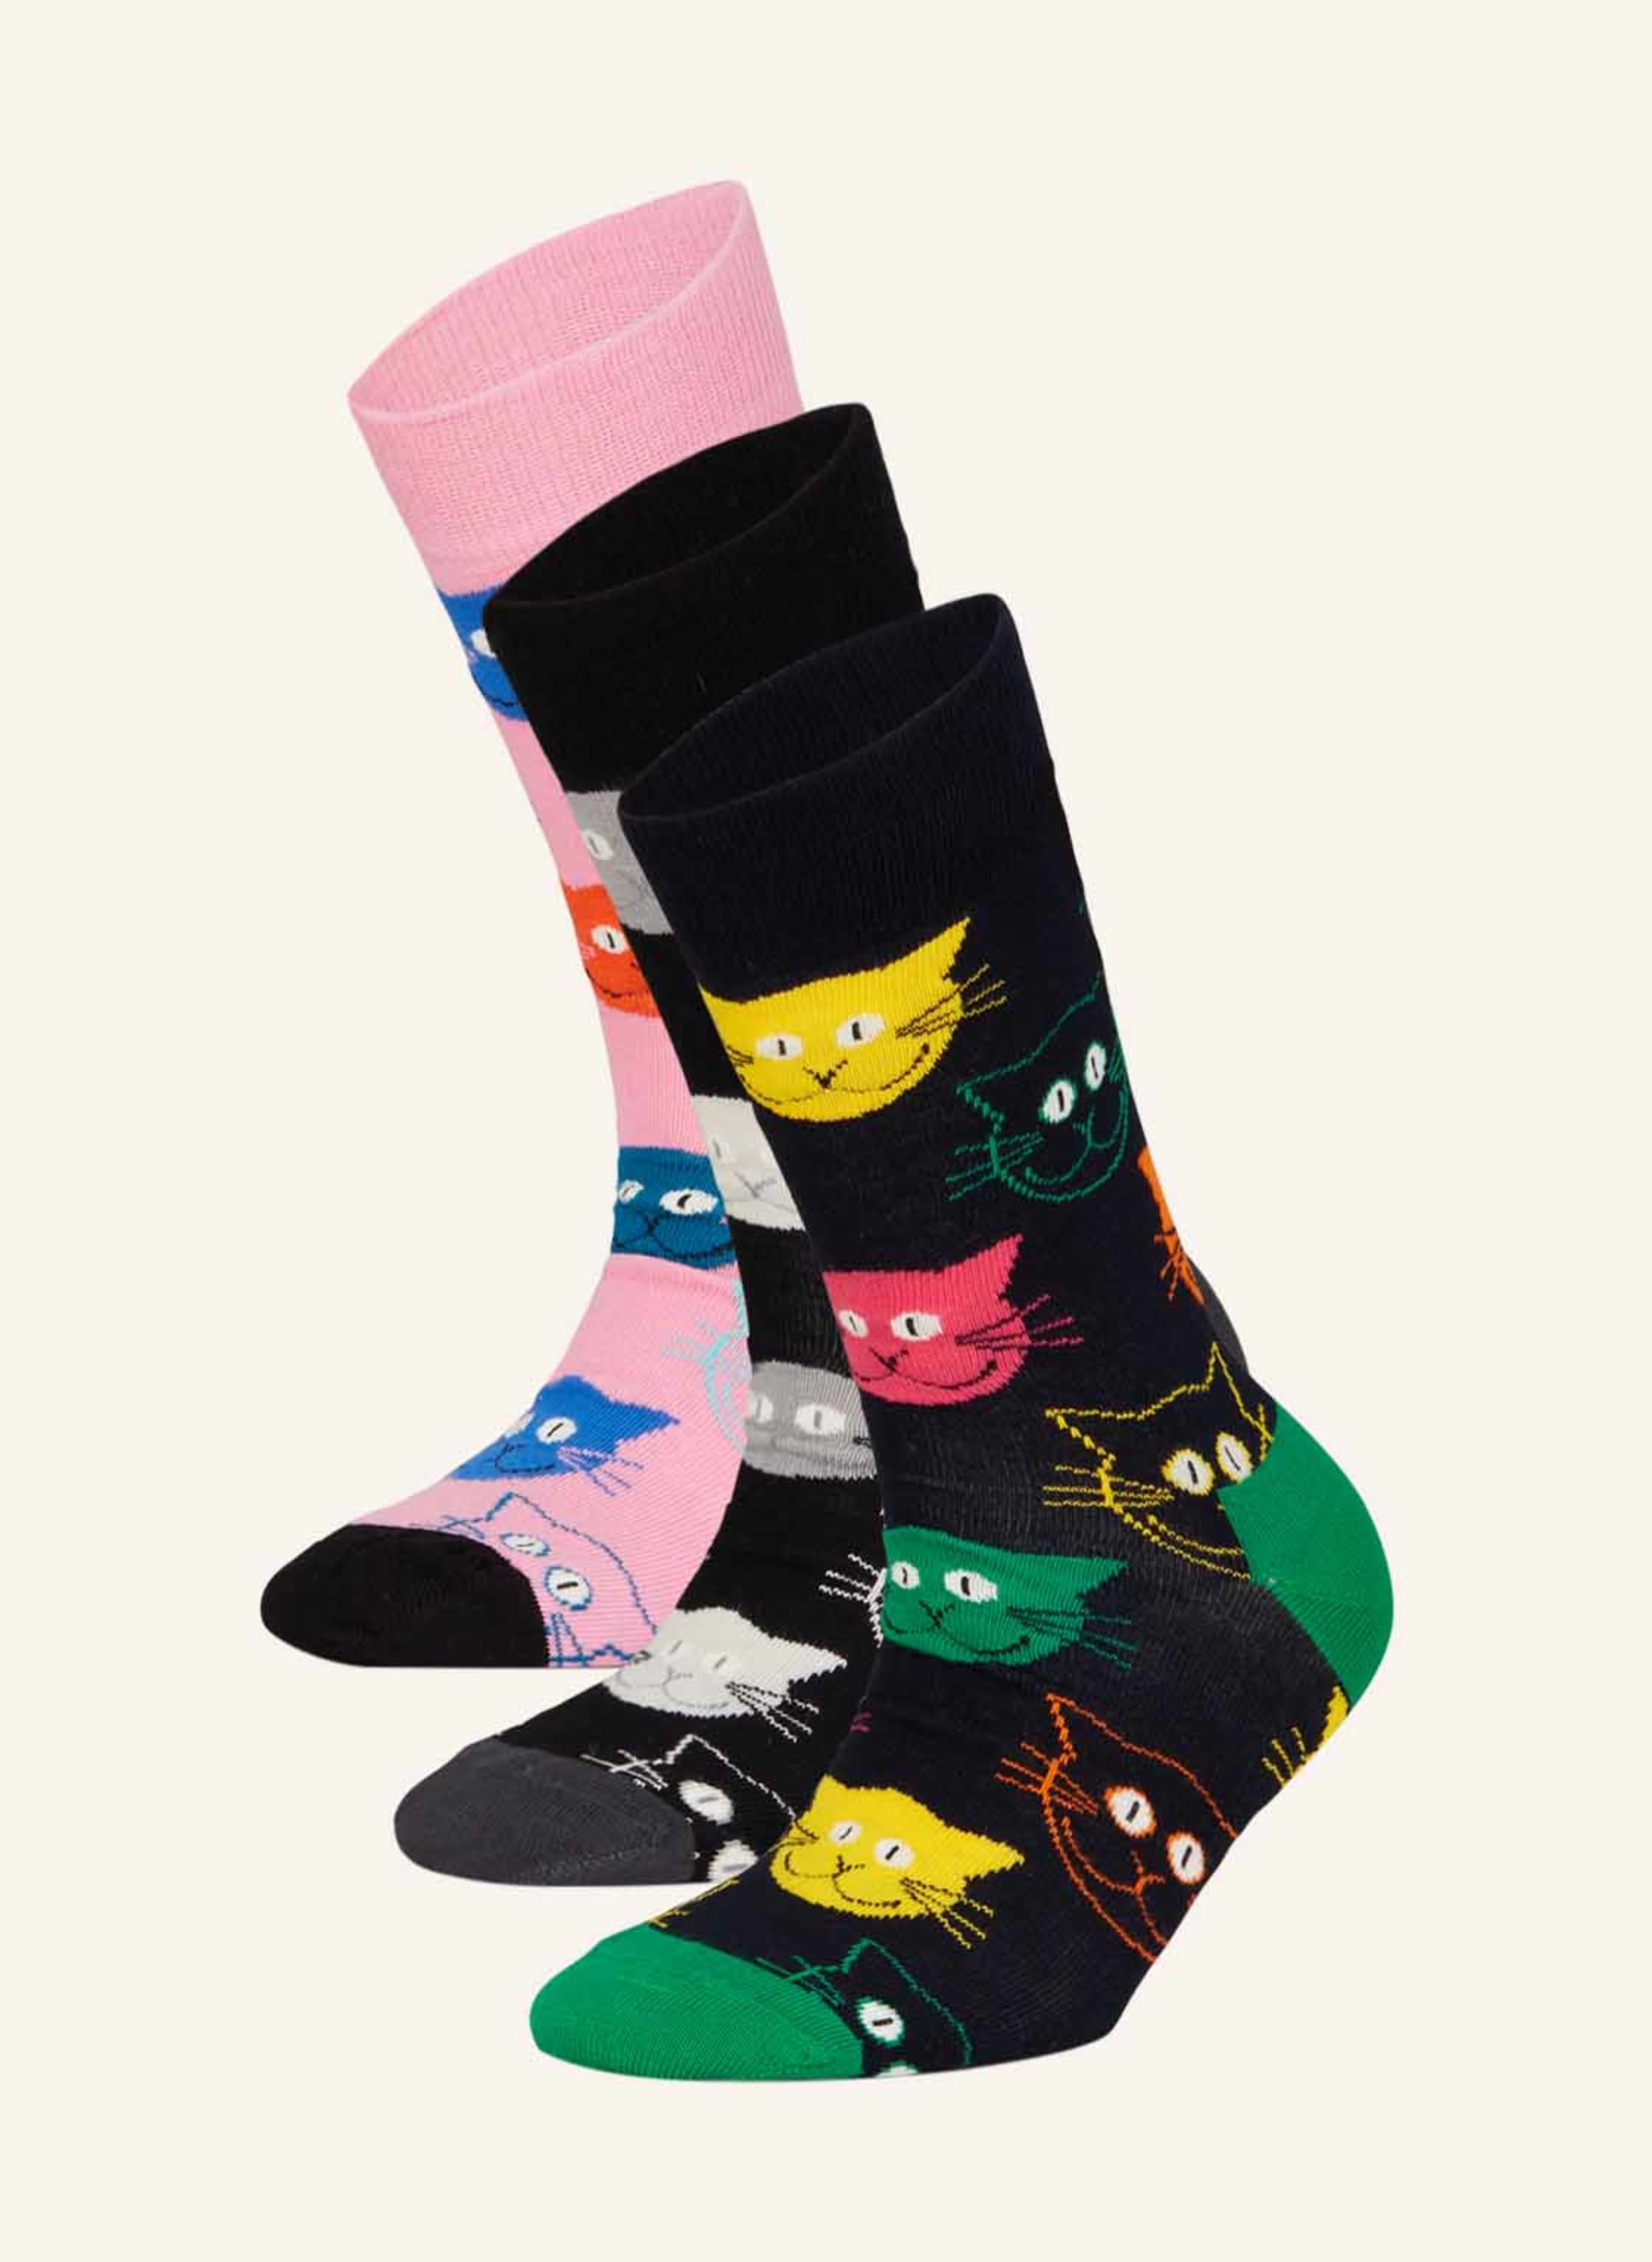 Happy Socks 3-pack socks pink/ CAT box gift orange in with black